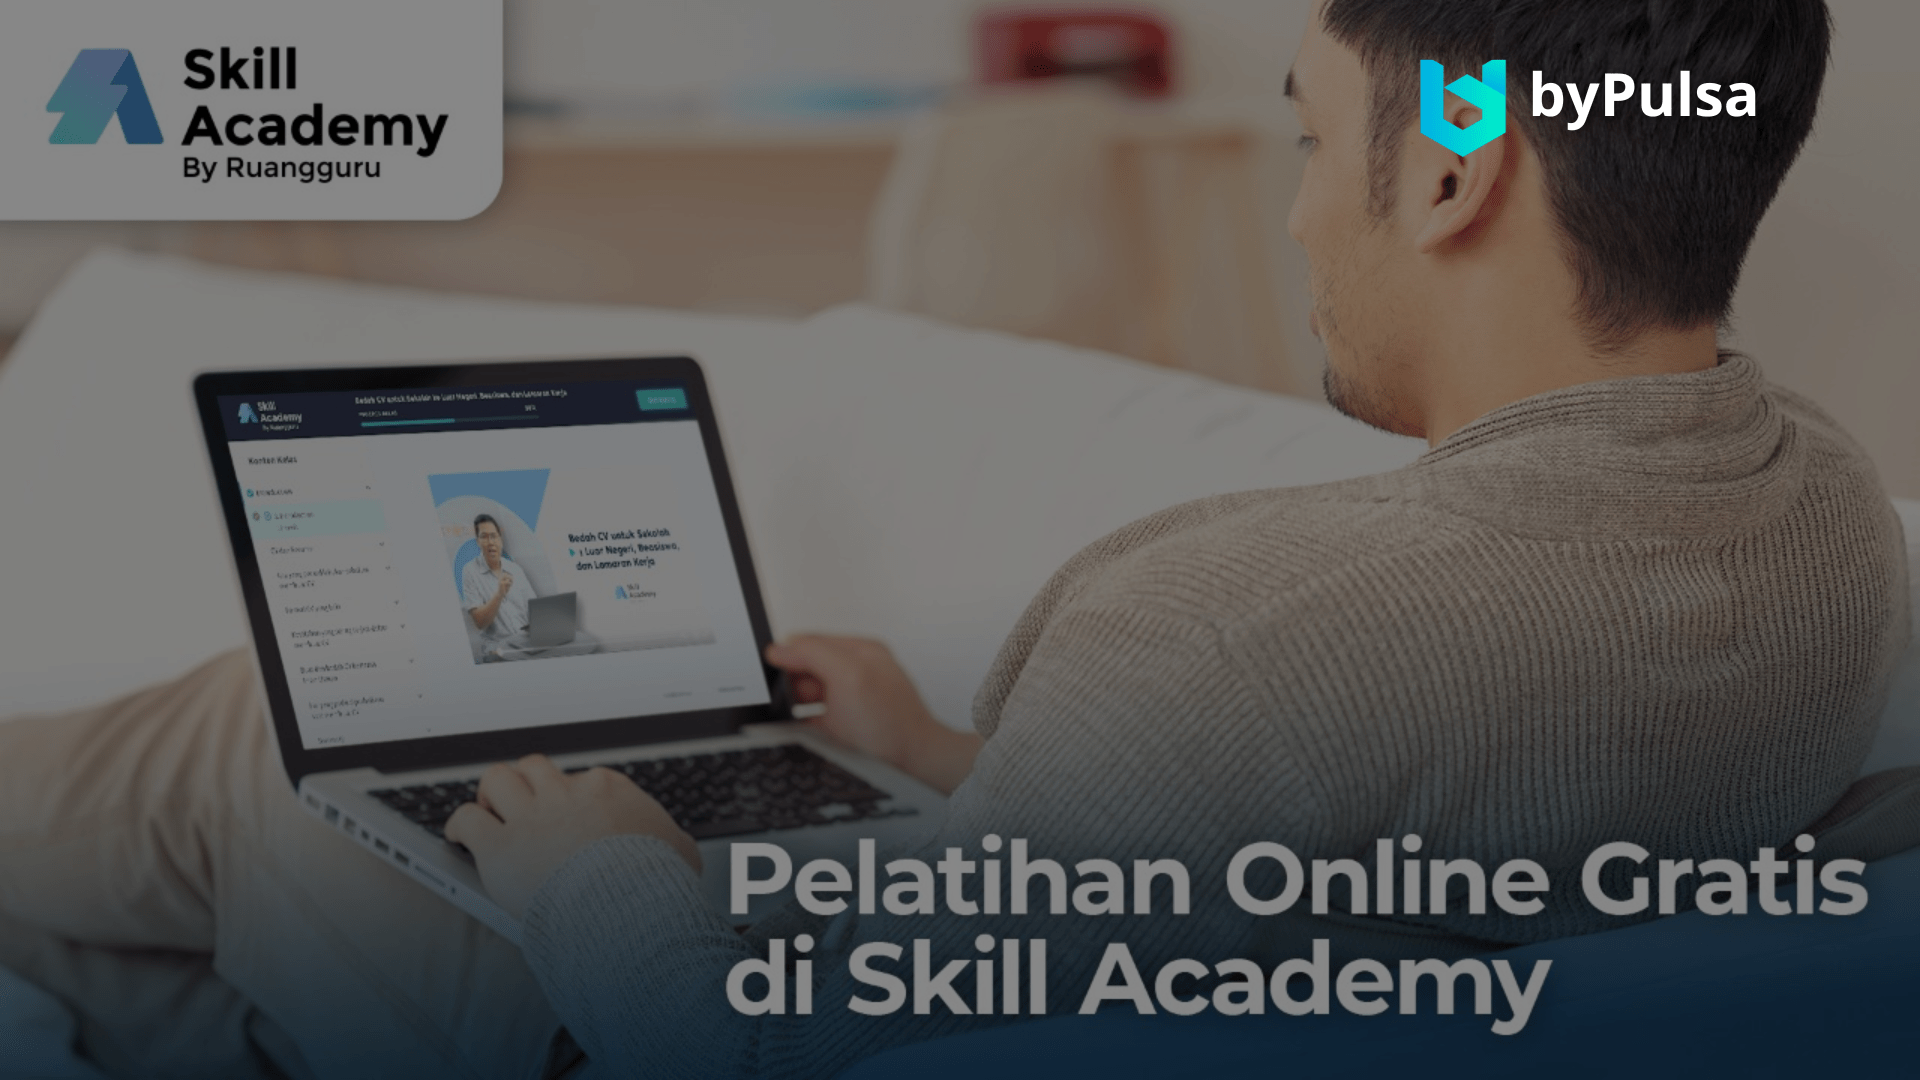 Situs untuk melakukan pengembangan diri yaitu Skill Academy dengan kemudahan mendaftar menggunakan Kartu prakerja